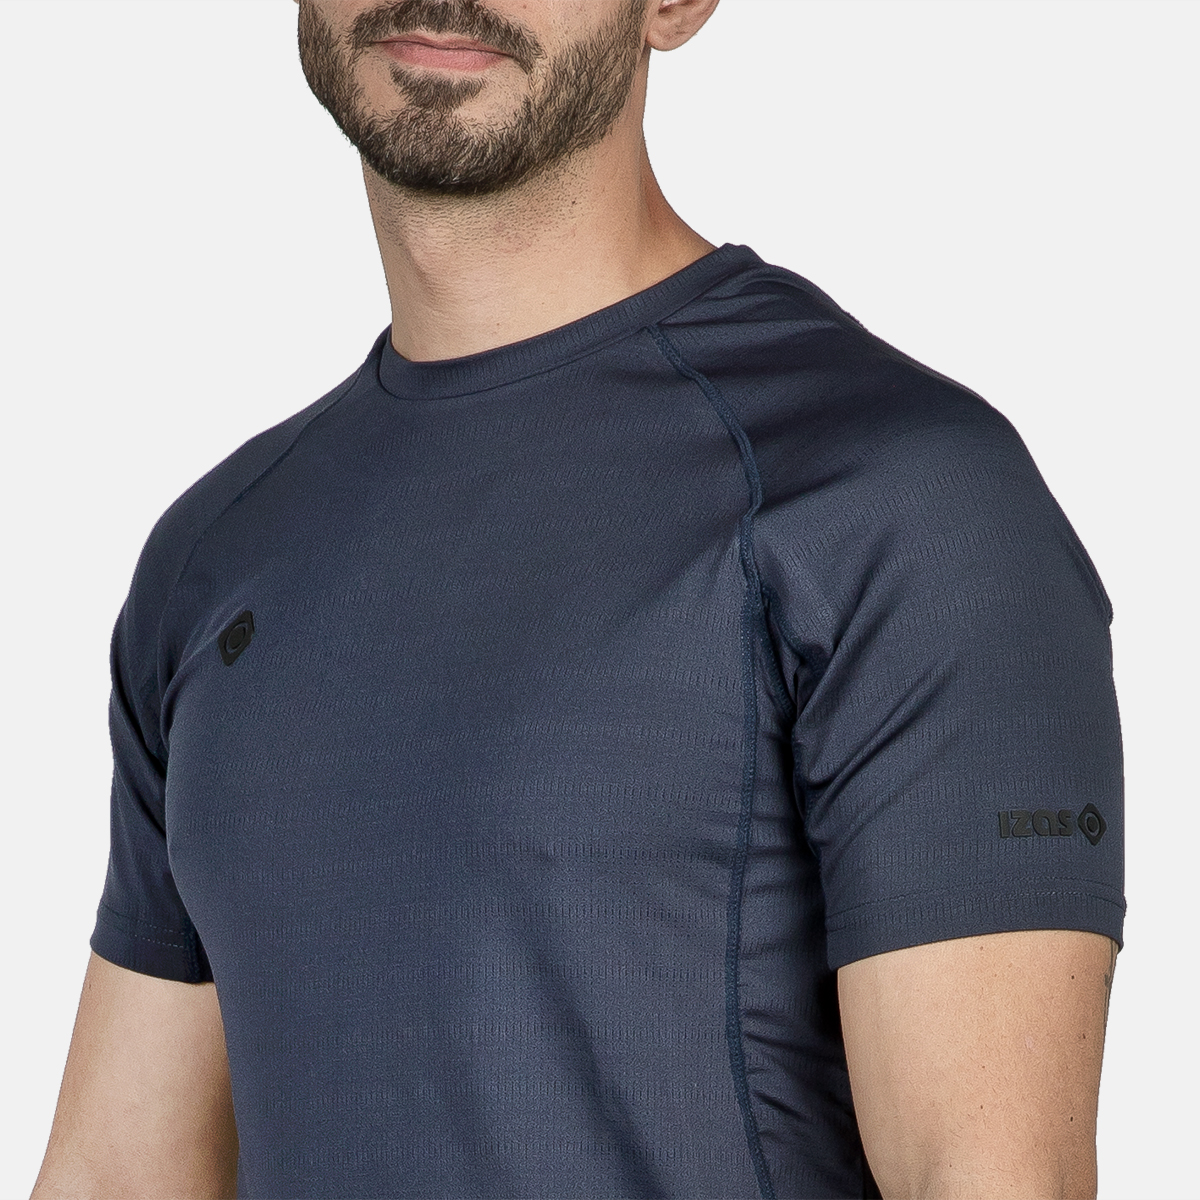  t-shirt technique à manches courtes pour hommes ategua